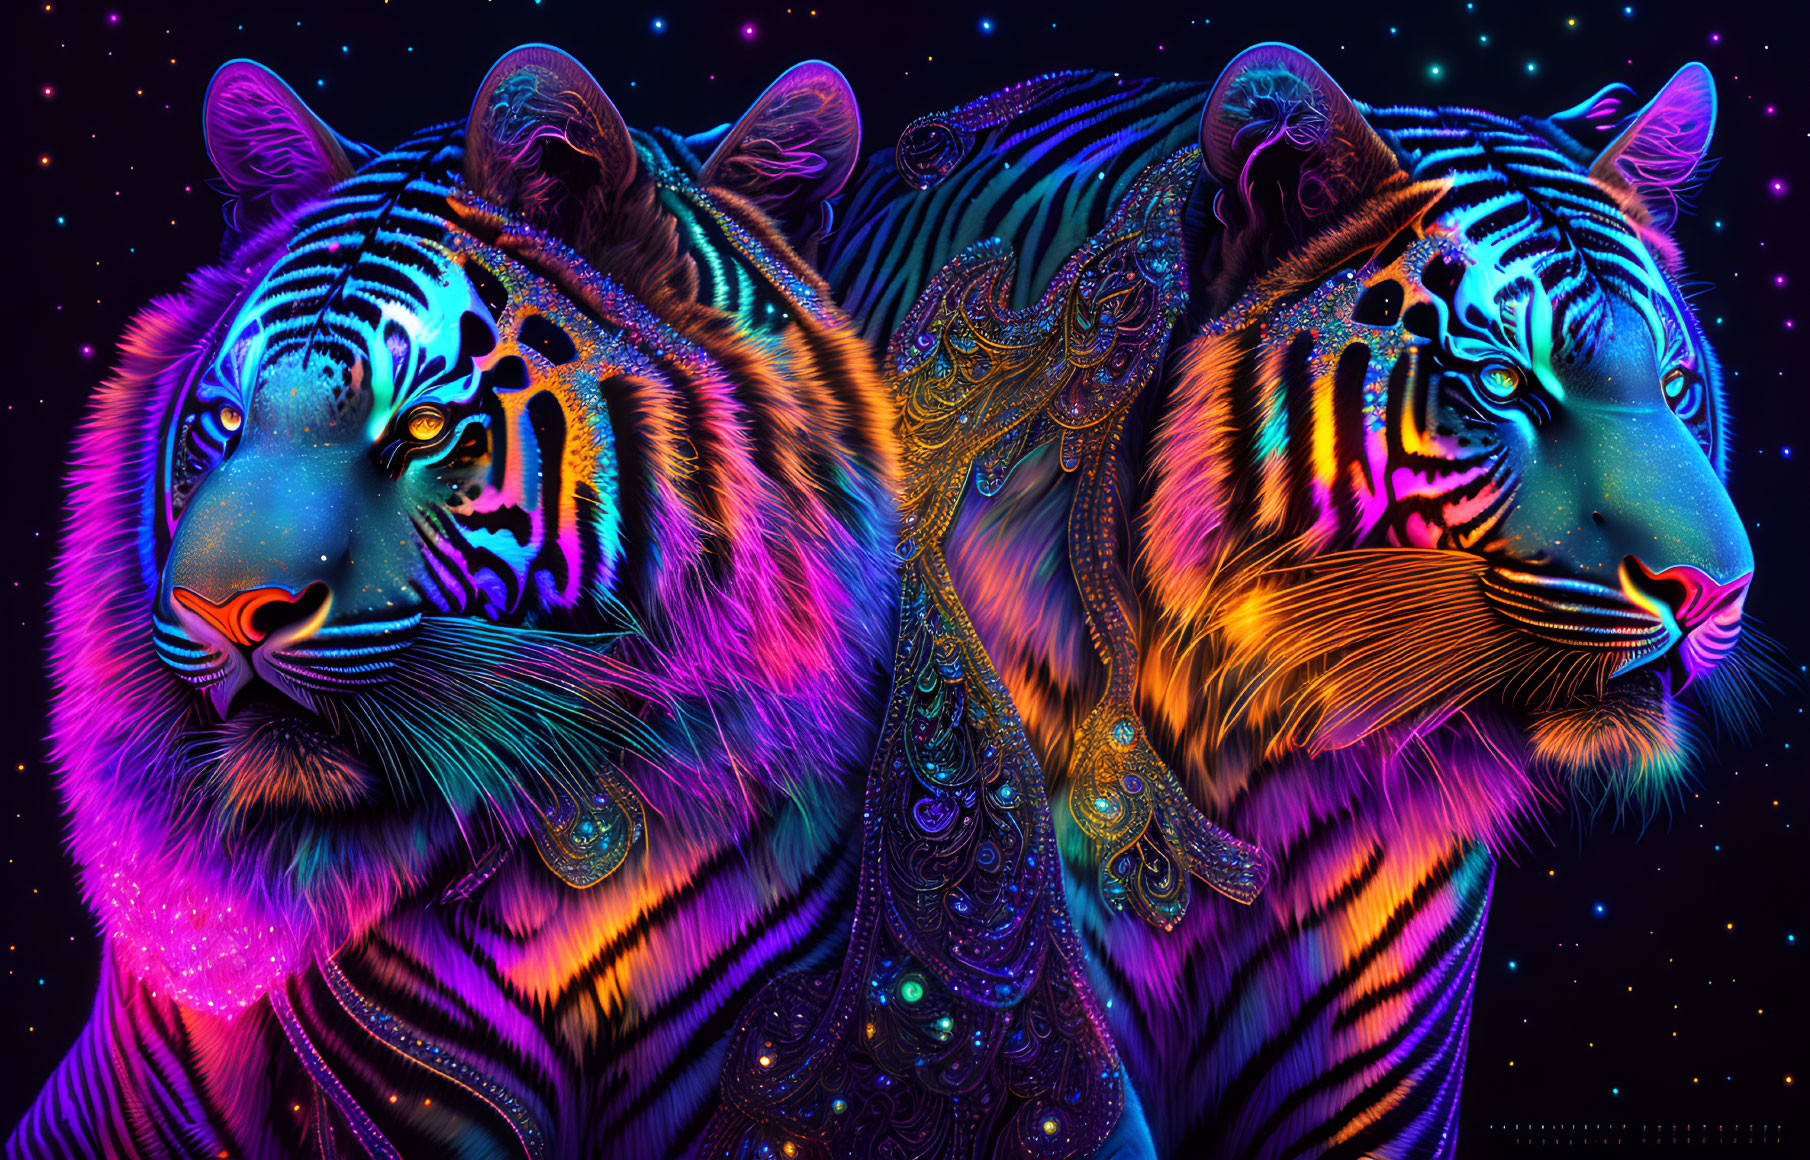 Bioluminescent tigers